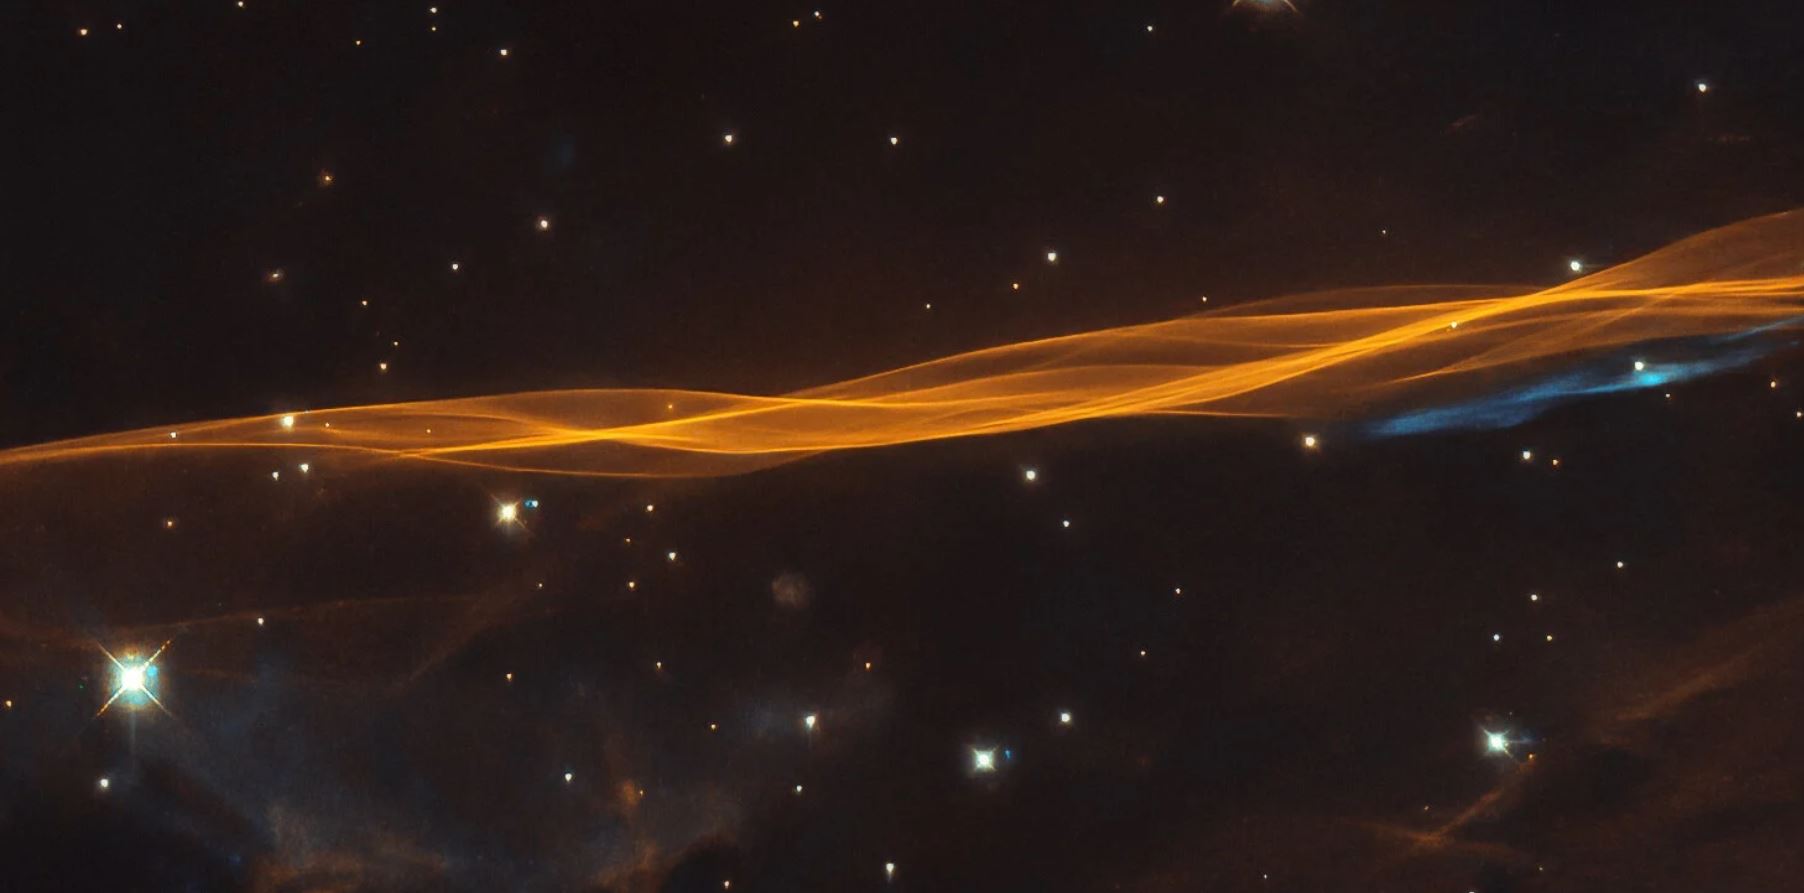 Hubble capta la onda expansiva de una supernova en la constelación de Cygnus